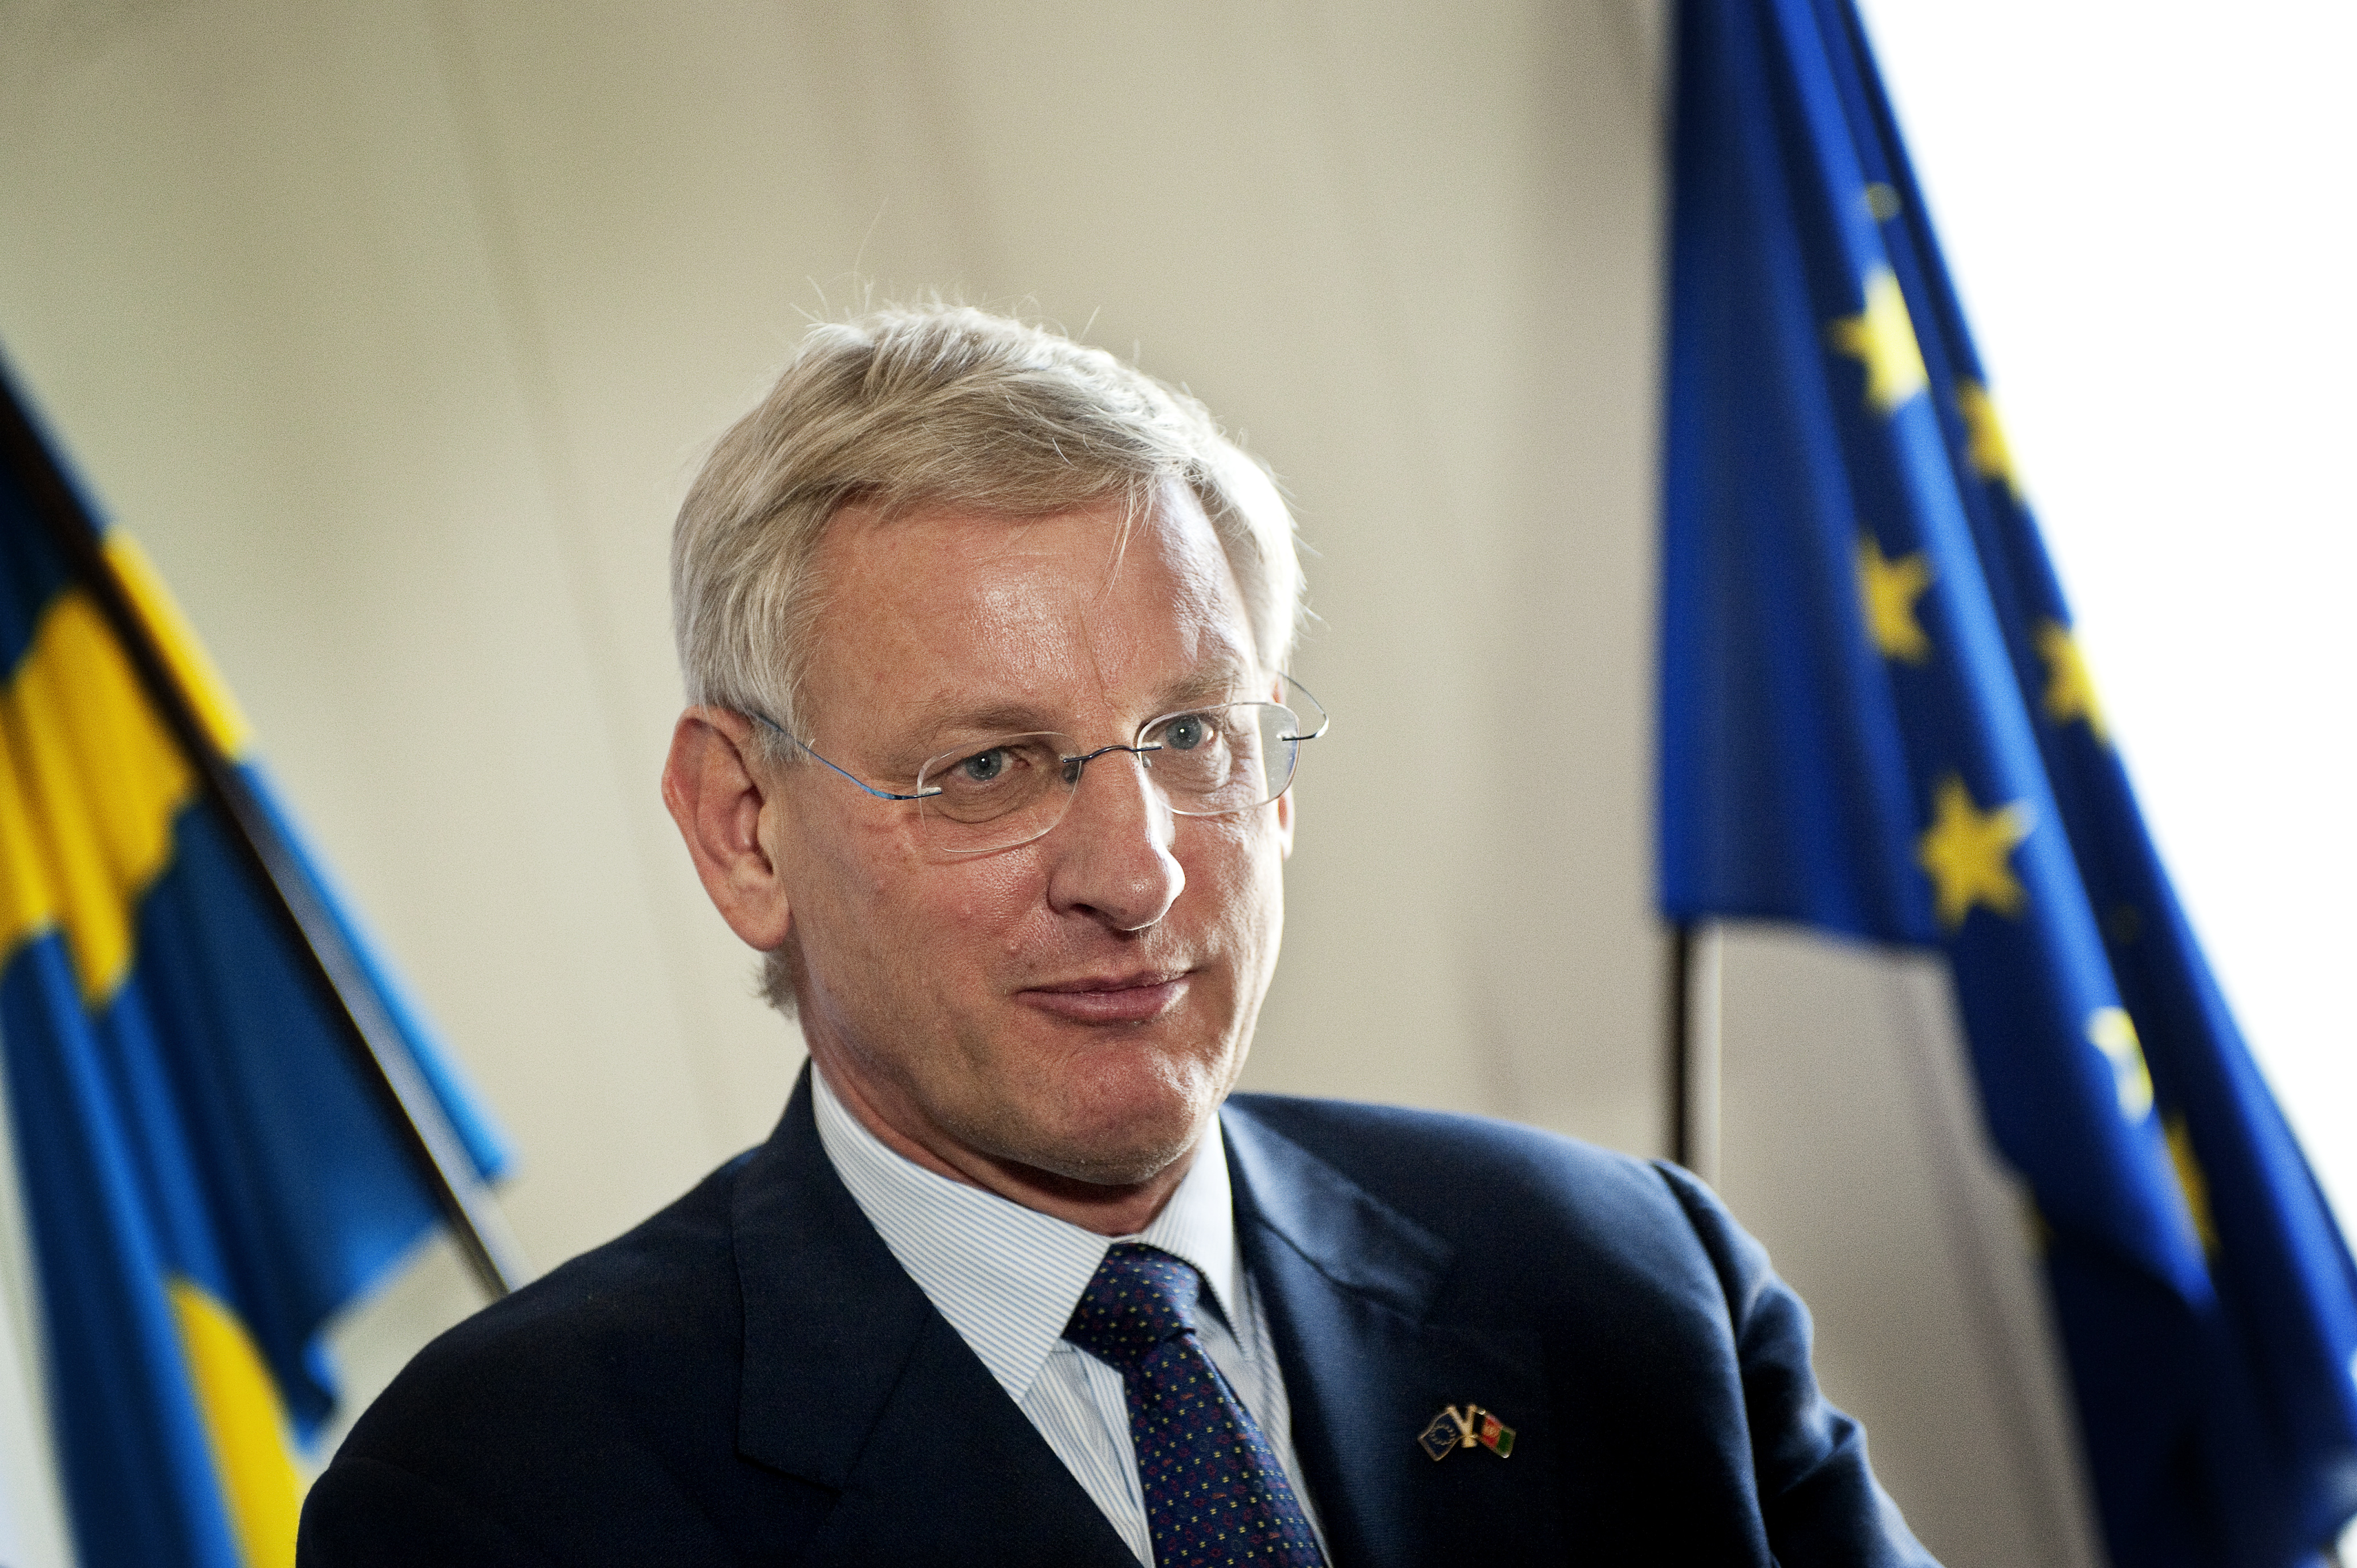 Att Carl Bildt för regeringens talan kring Ship to Gaza är inget problem, enligt Emma Marie Andersson.